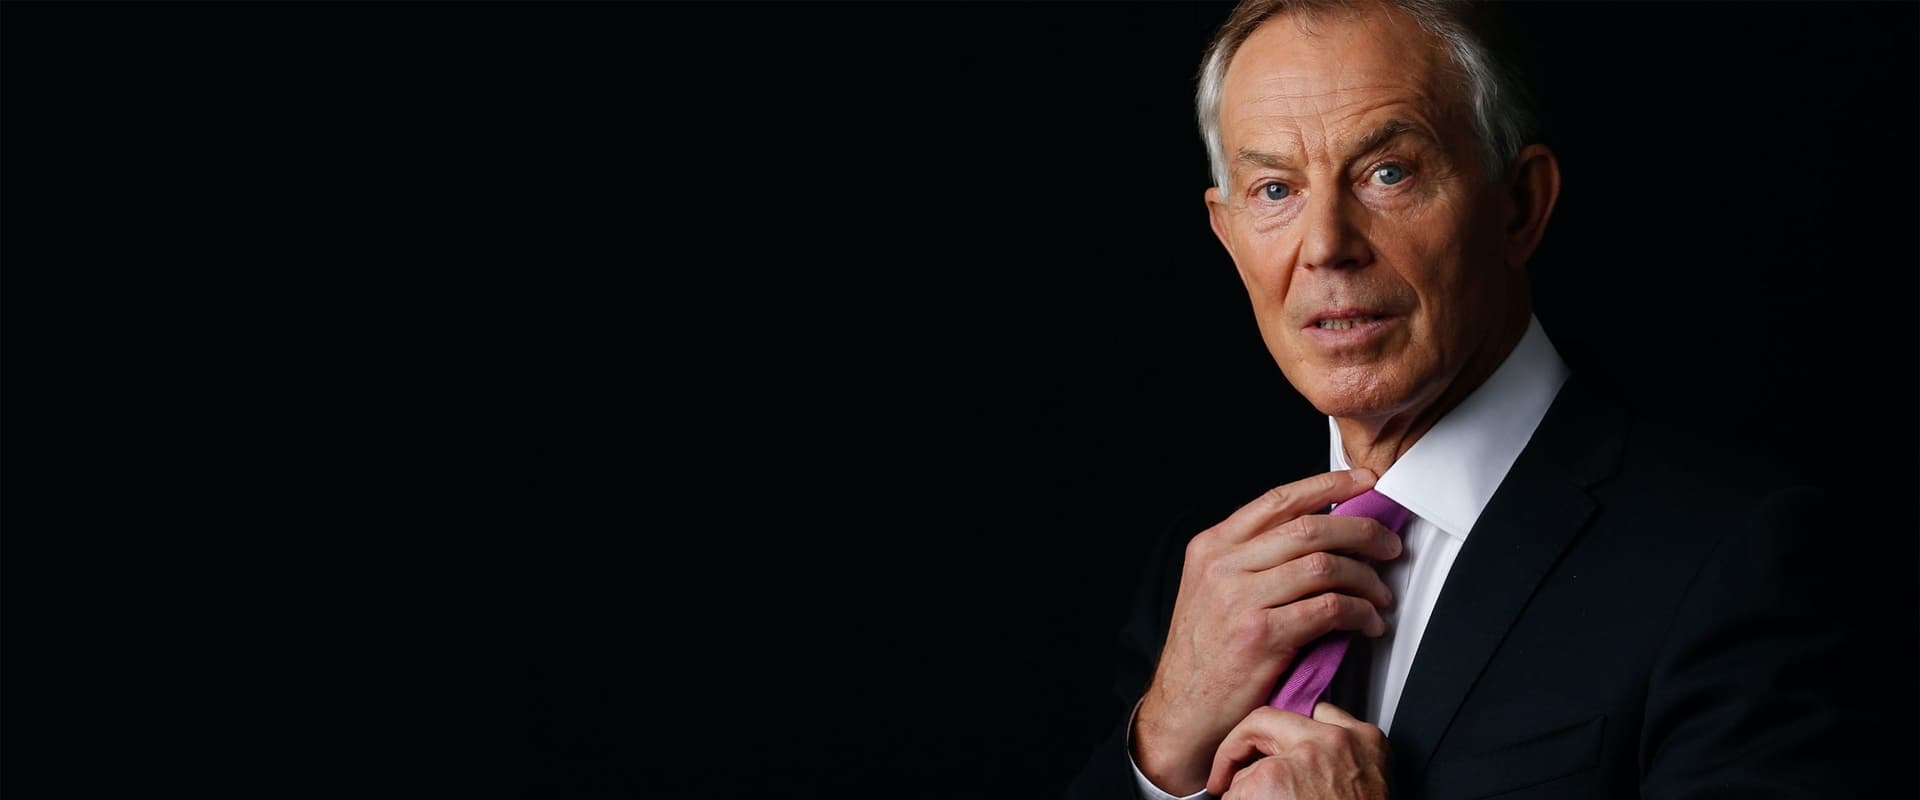 The Killing$ of Tony Blair